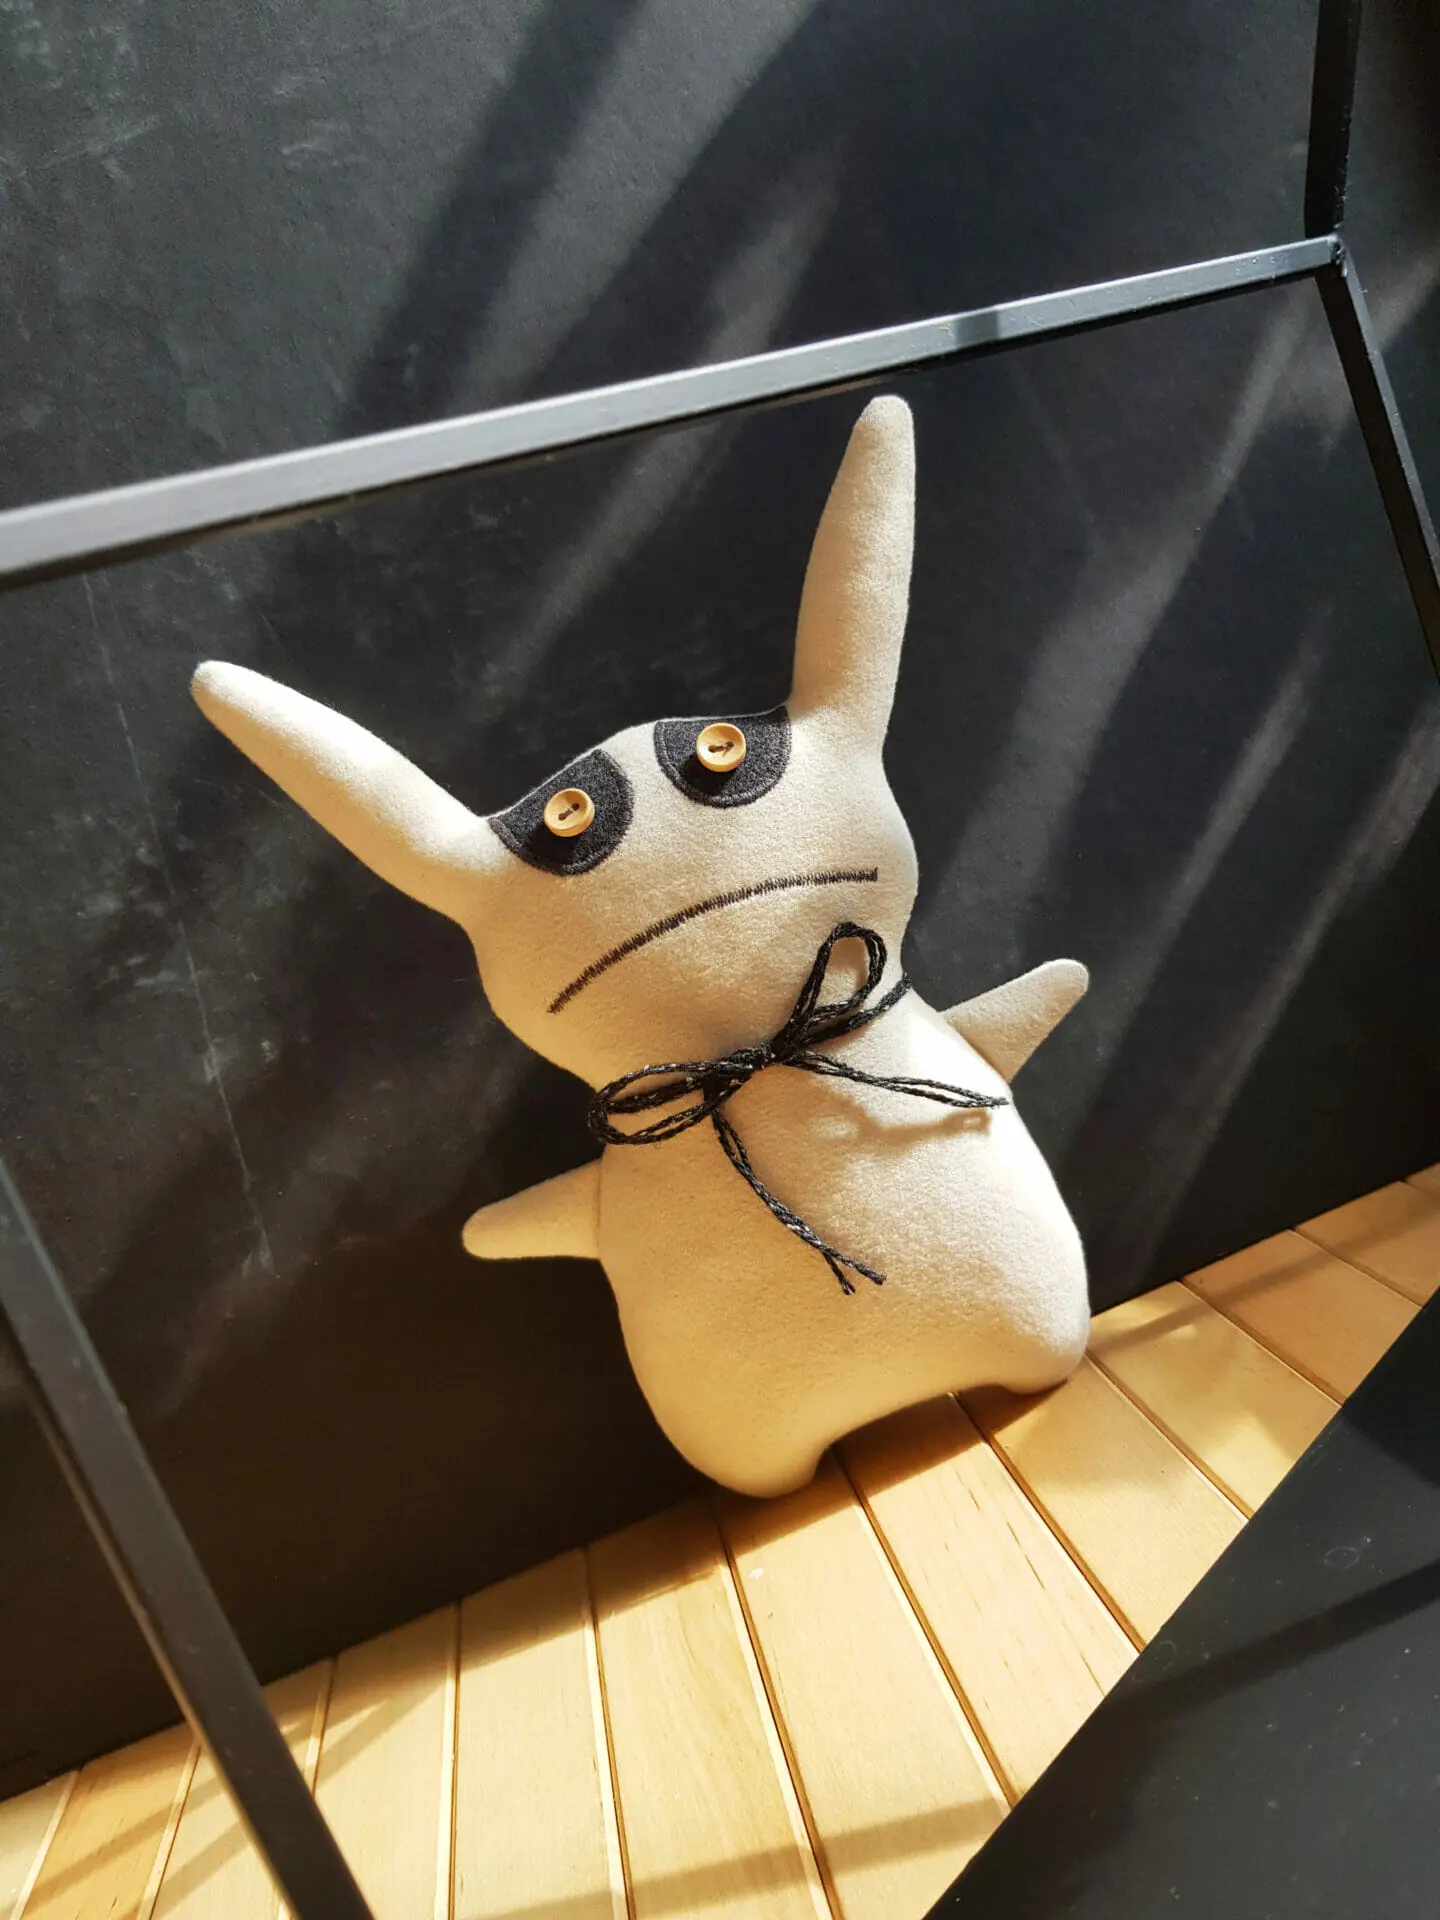 Creepy Cute Bunny Sewing Pattern PDF, Goth Rag Doll Tutorial - Inspire  Uplift